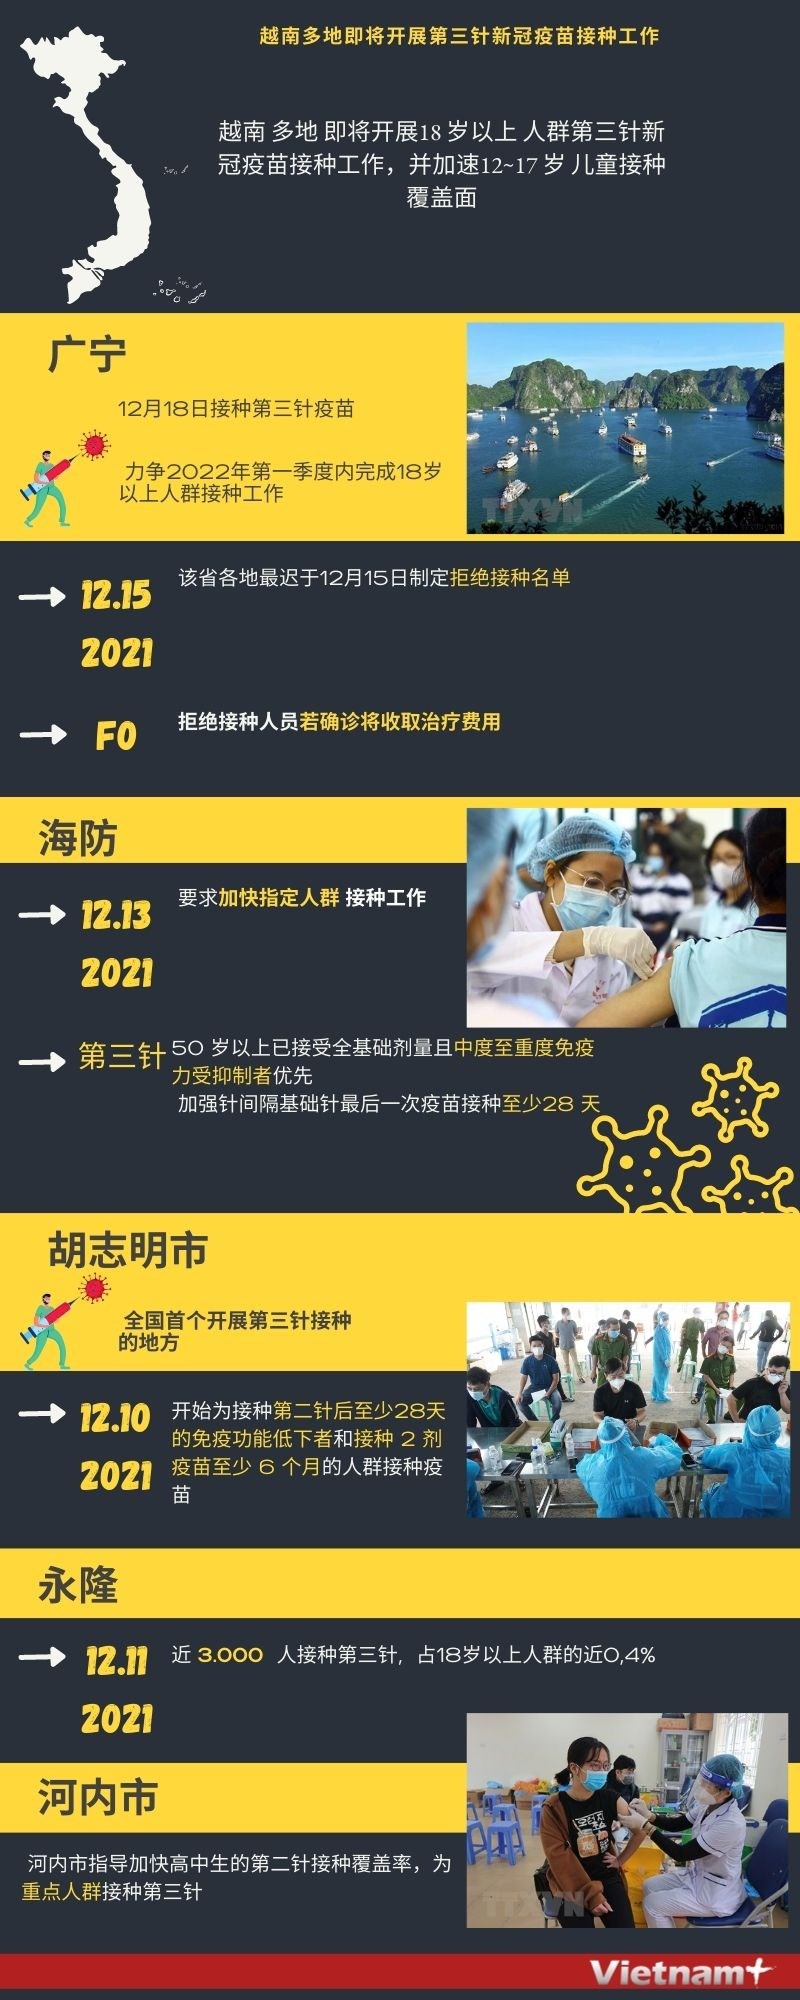 图表新闻：越南多地即将开展第三针新冠疫苗接种工作 hinh anh 1